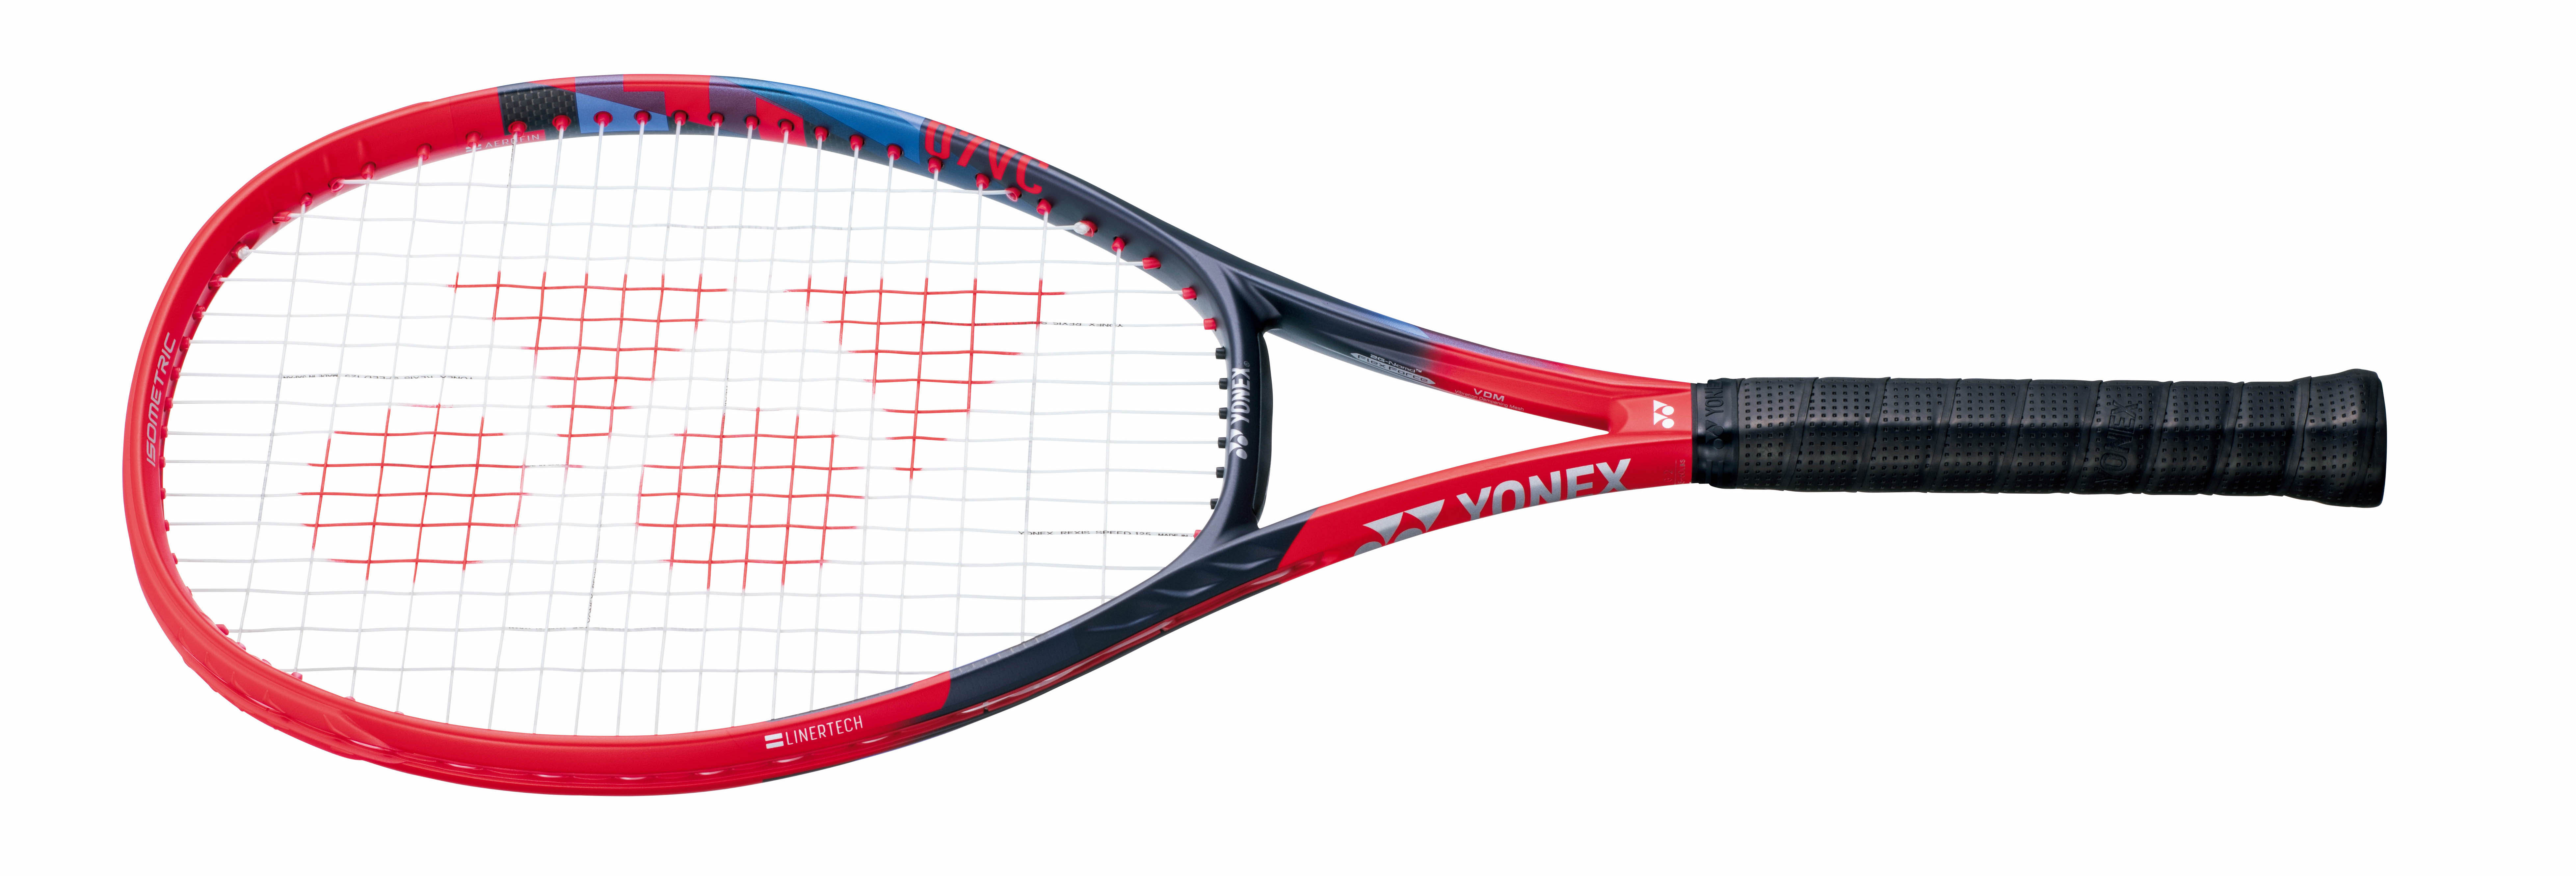 テニスラケット 硬式 VCORE 100-